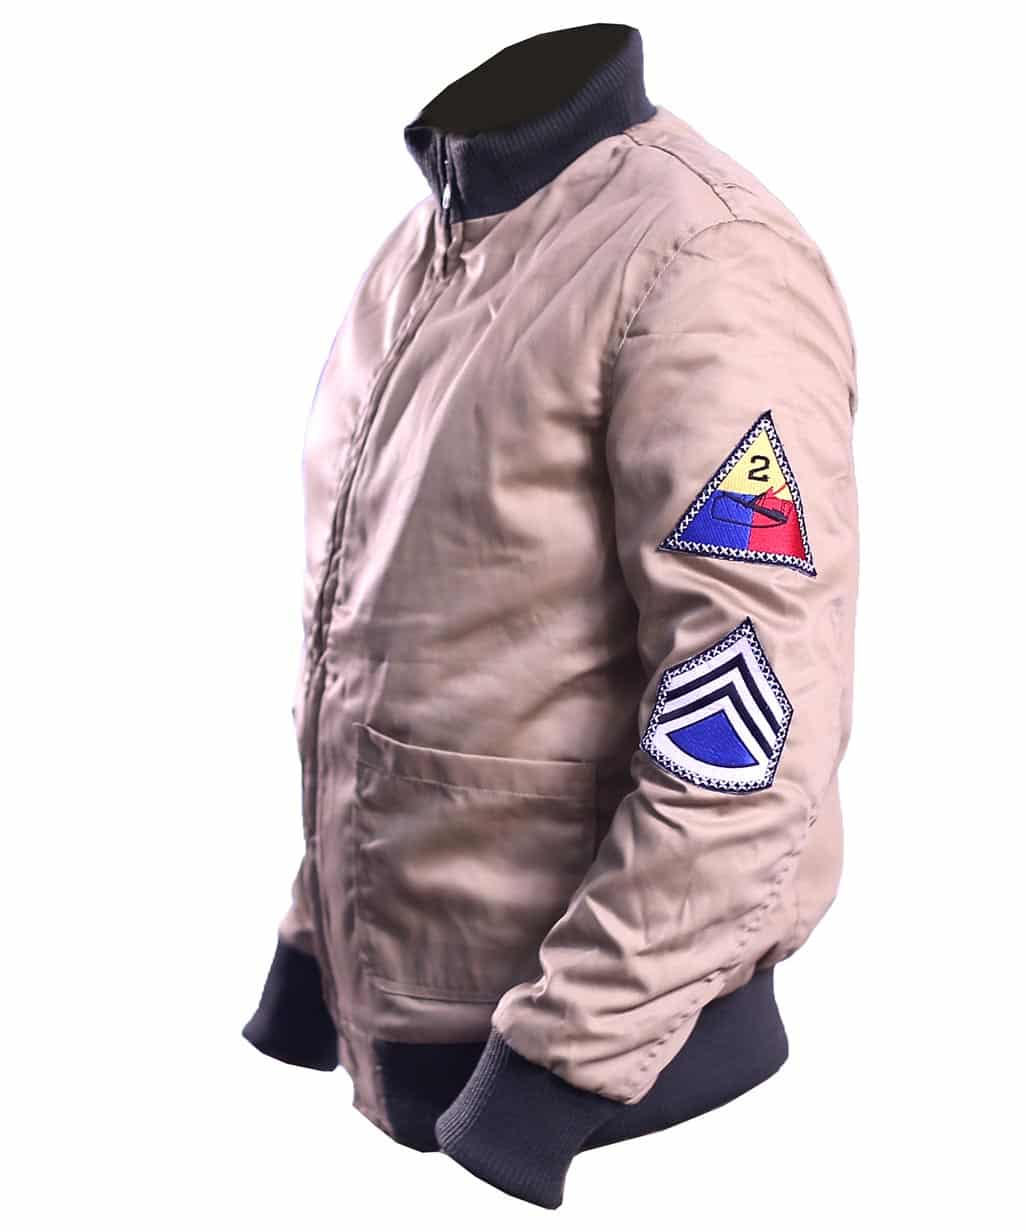 brad-pitt-fury-wardaddy-ww2-military-bomber-jacket